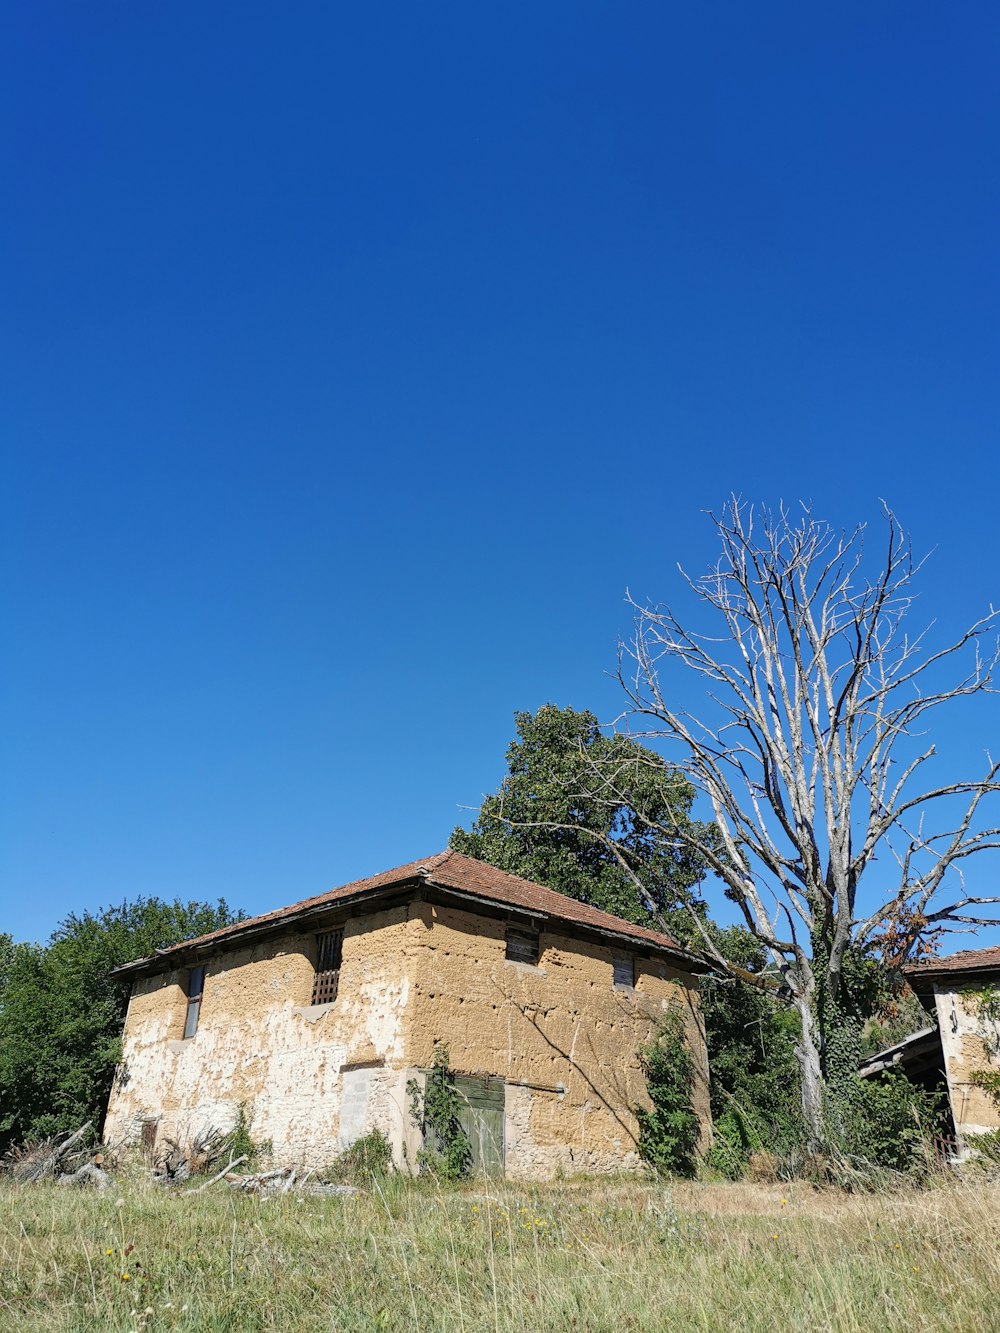 albero nudo vicino all'edificio in cemento marrone sotto il cielo blu durante il giorno